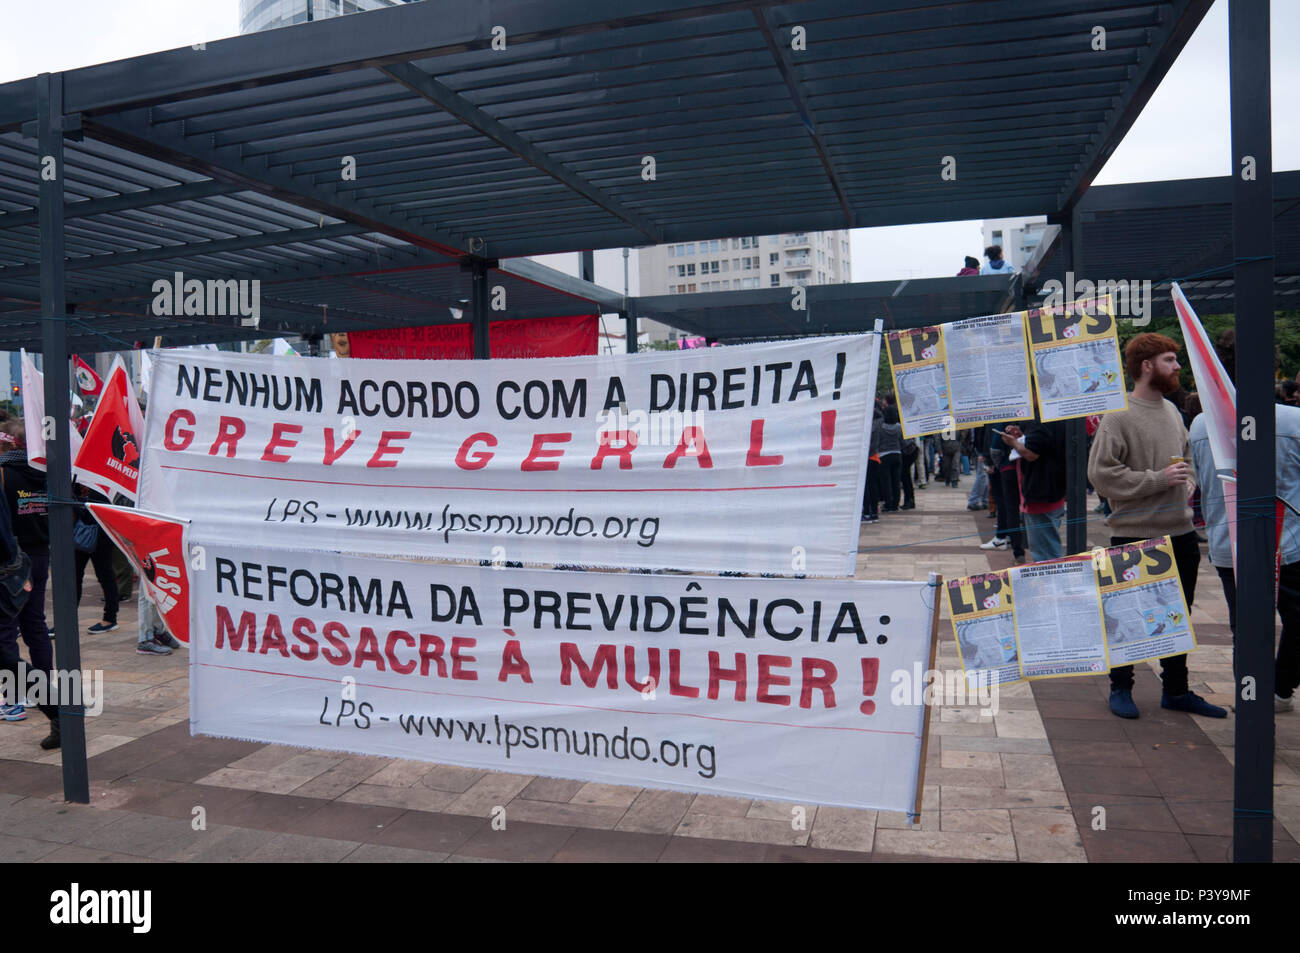 Manifestantes, sindicatos e movimentos sociais se reunem no ato unificado da Greve Geral, no Largo de Pinheiros, em São Paulo, SP. Manifestantes protestam contra as Reformas trabalhista e previdenciária. Stock Photo